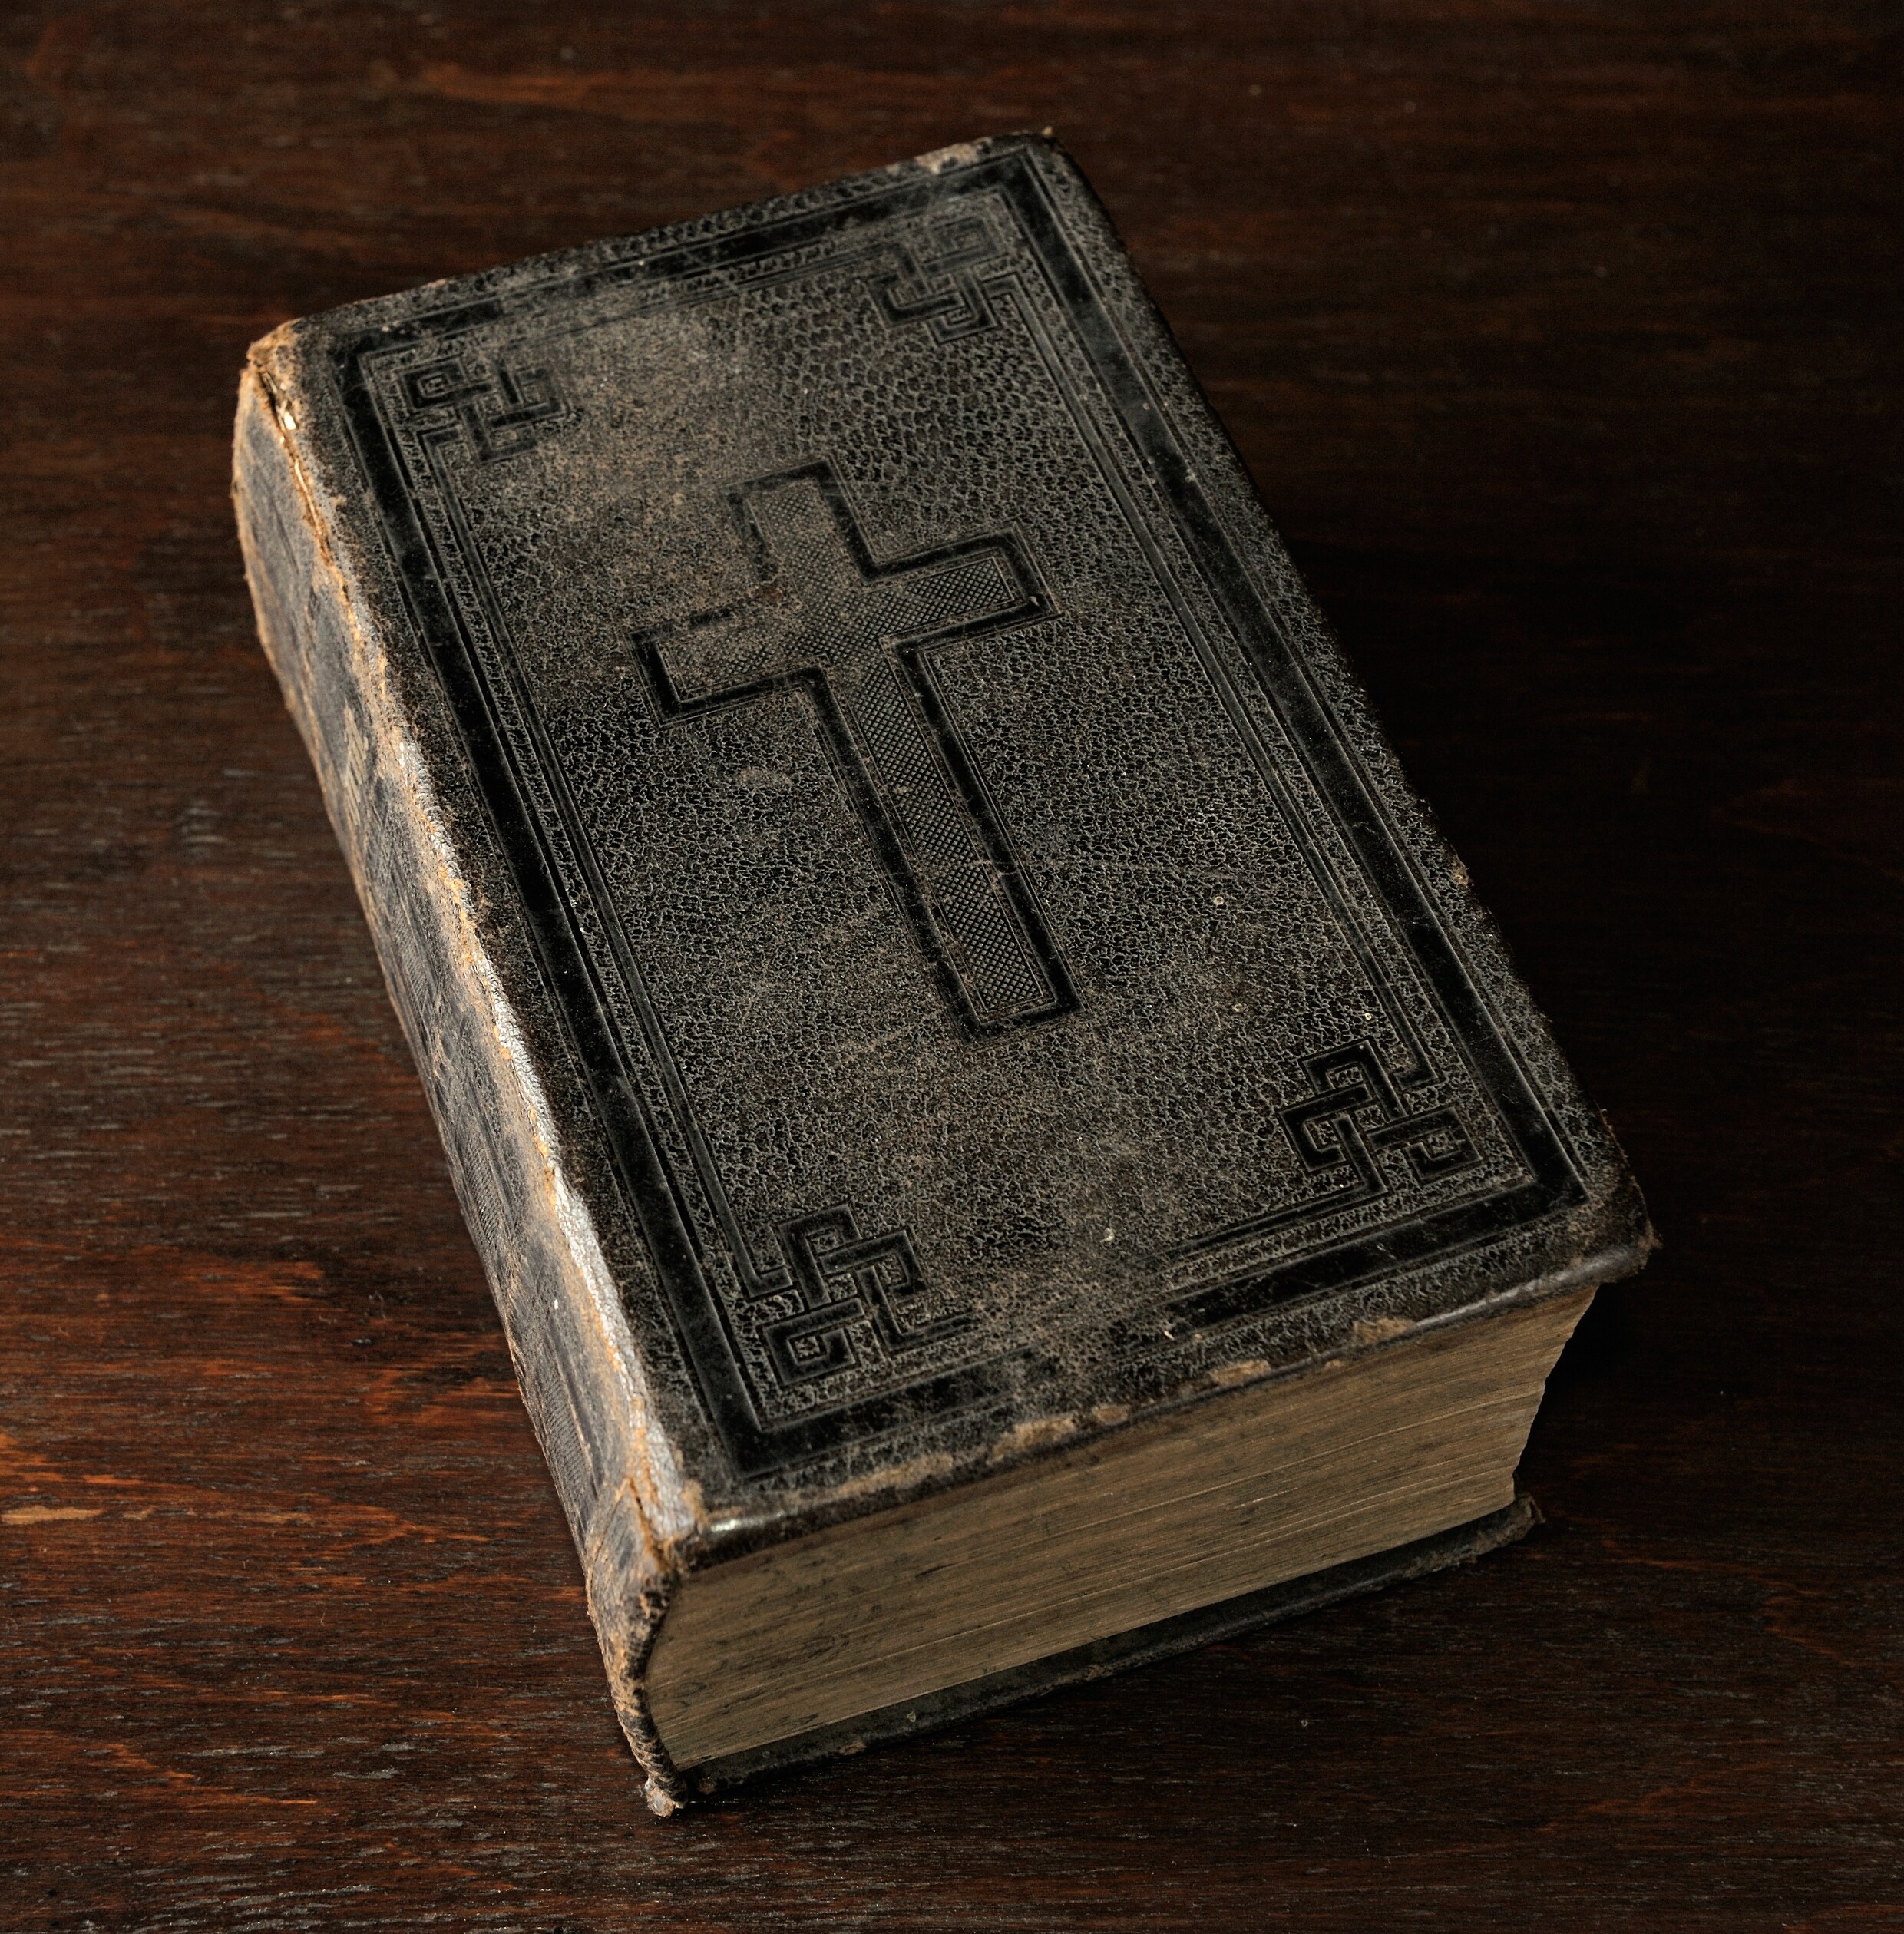 Wat weet u nog over de Bijbel? Test uw kennis in deze quiz